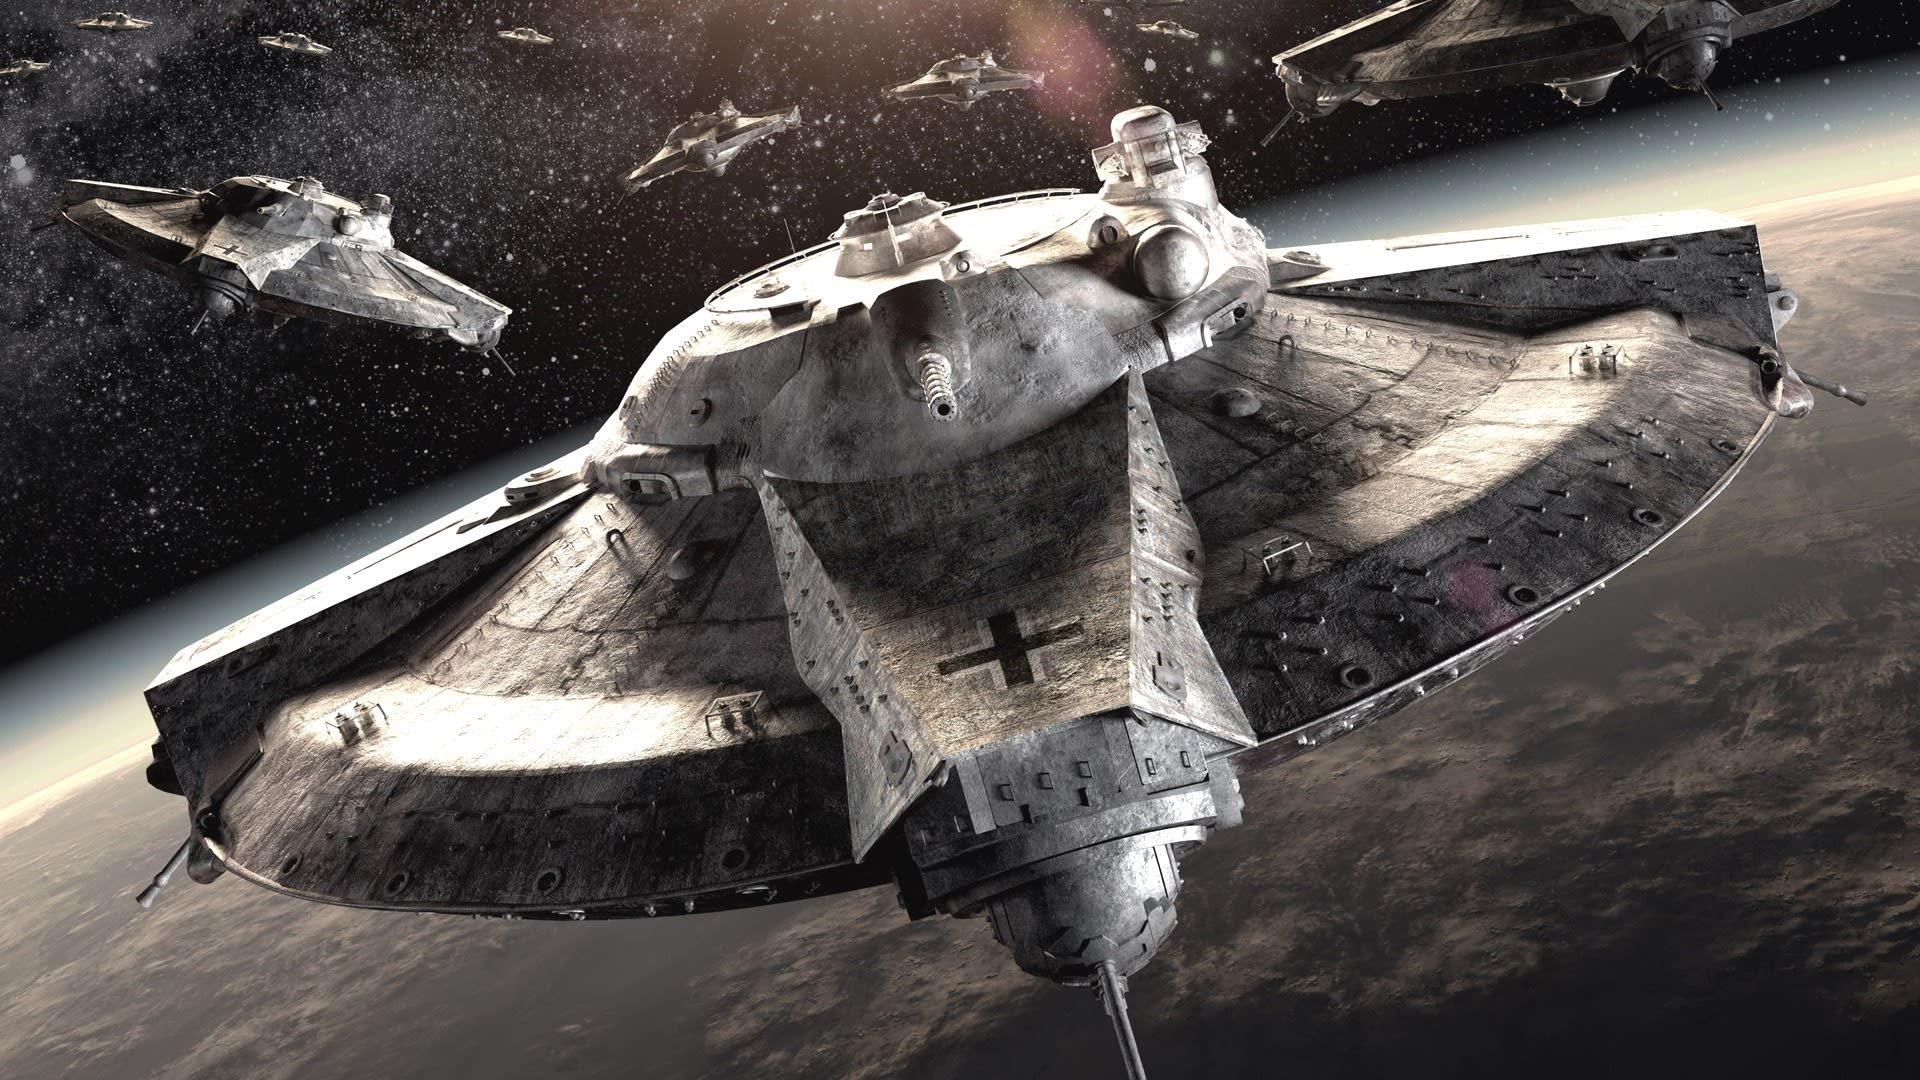 Fotka ze sci-fi filmu Iron Sky, ve kterém mají nacisté základnu na Měsíci.